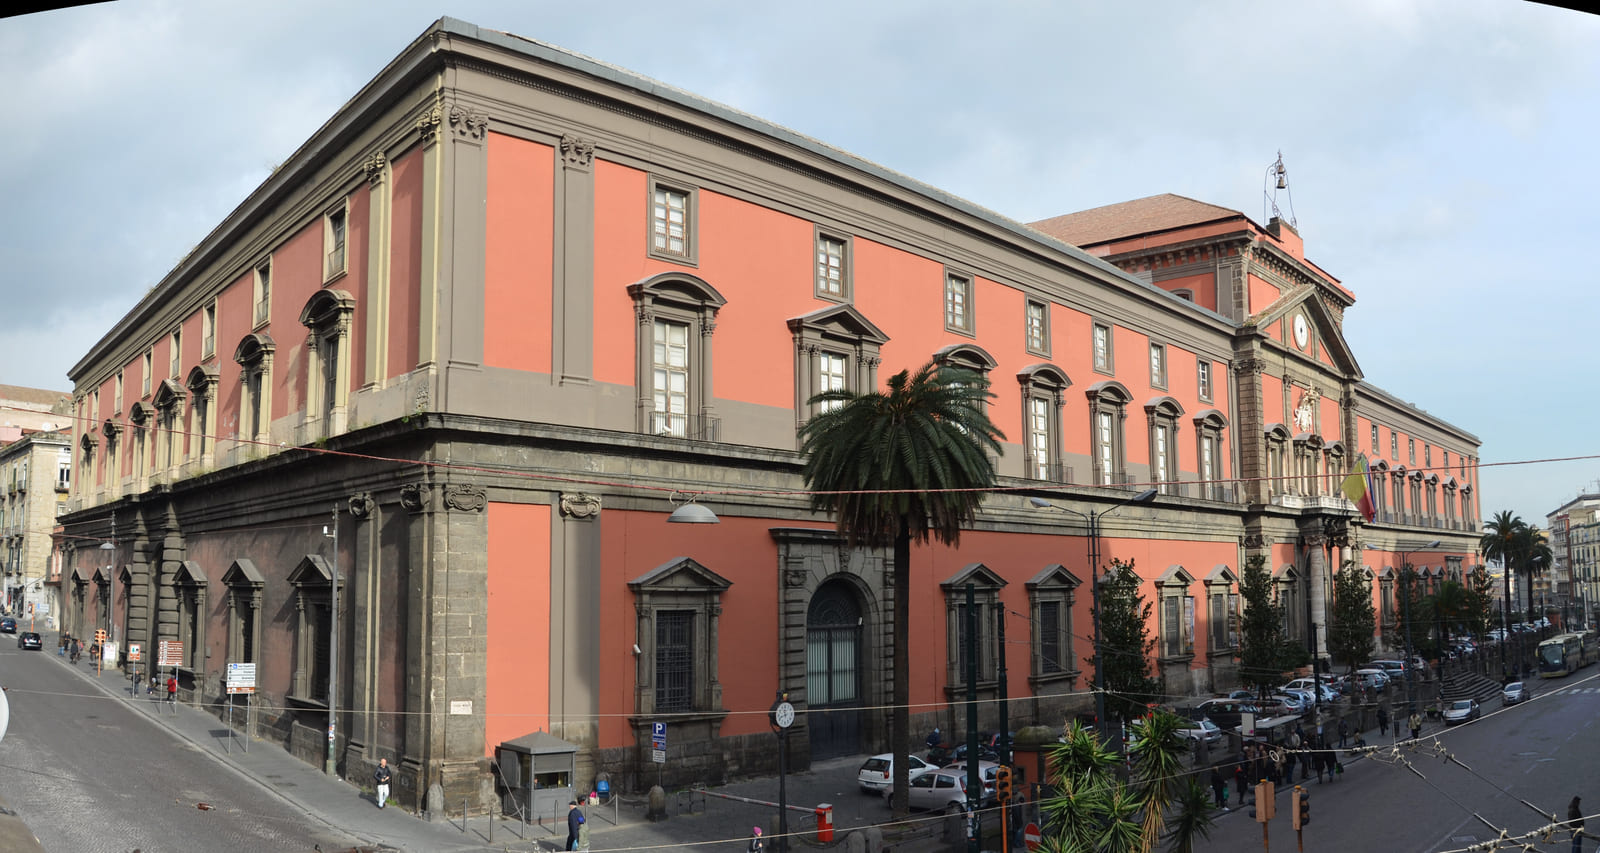 Foto da fachada de uma construção, o prédio lembra a arquitetura colonial, com grandes portas, sendo adornado por contornos de pedra sobre as janelas e em sua "moldura", o edifício é da cor laranja.